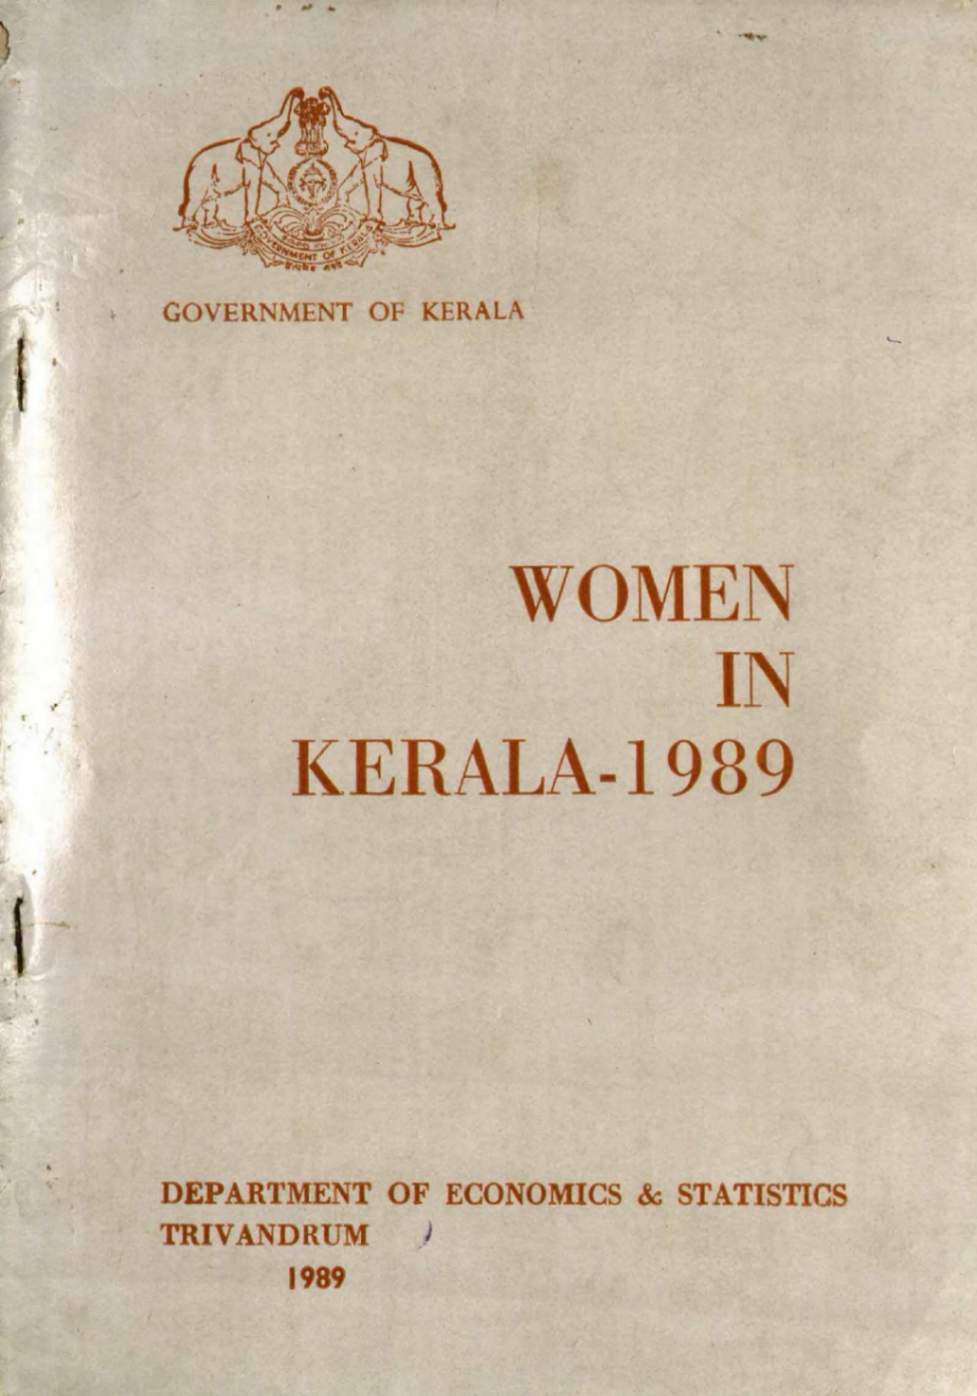 WOMEN IN KERALA-1989